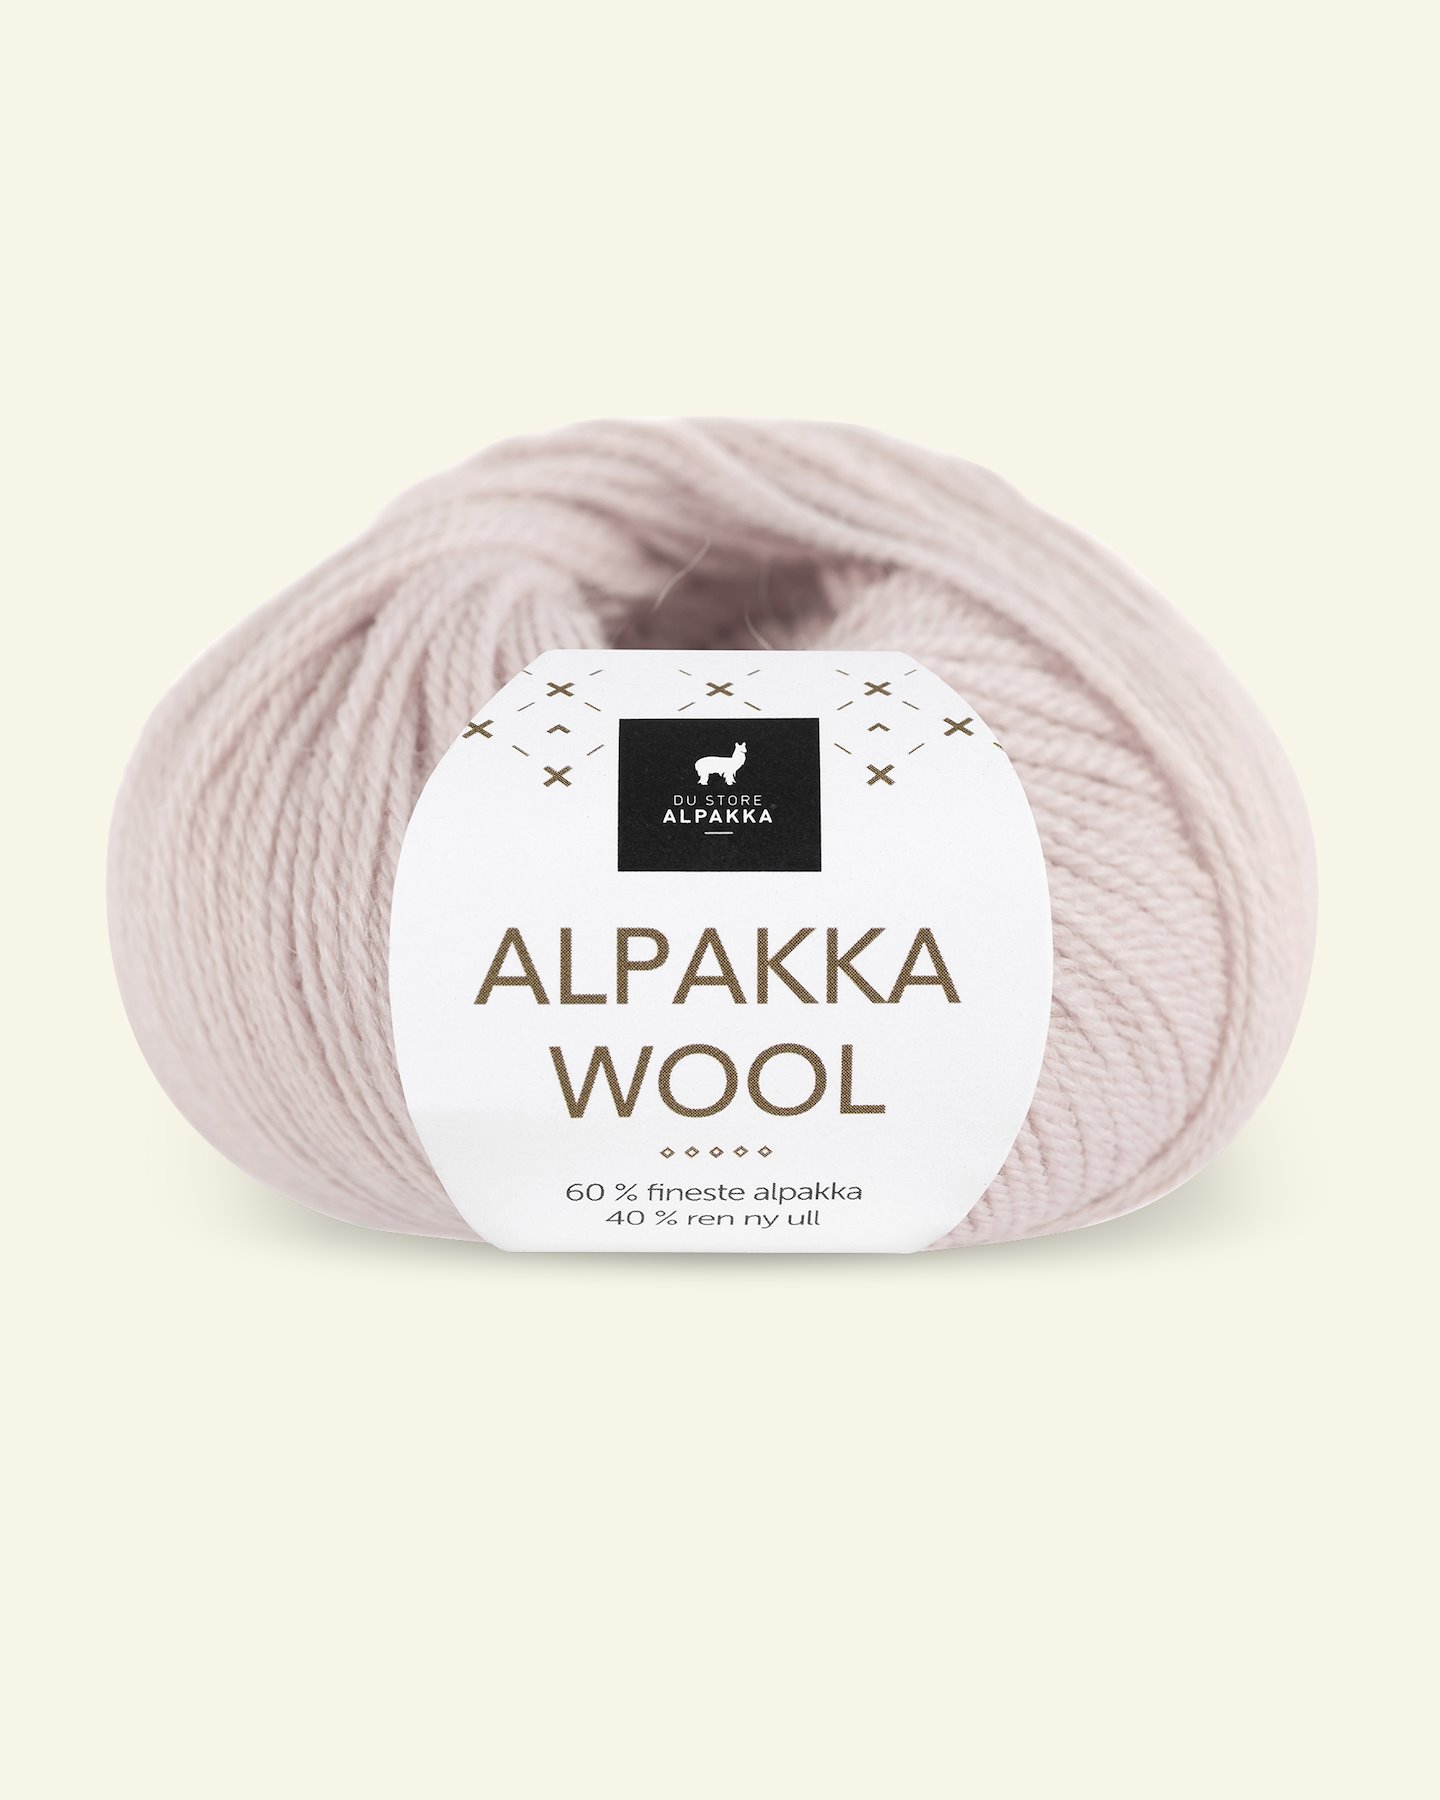 Du Store Alpakka, Alpakka ullgarn "Alpakka Wool", puderrosa (556) 90000573_pack